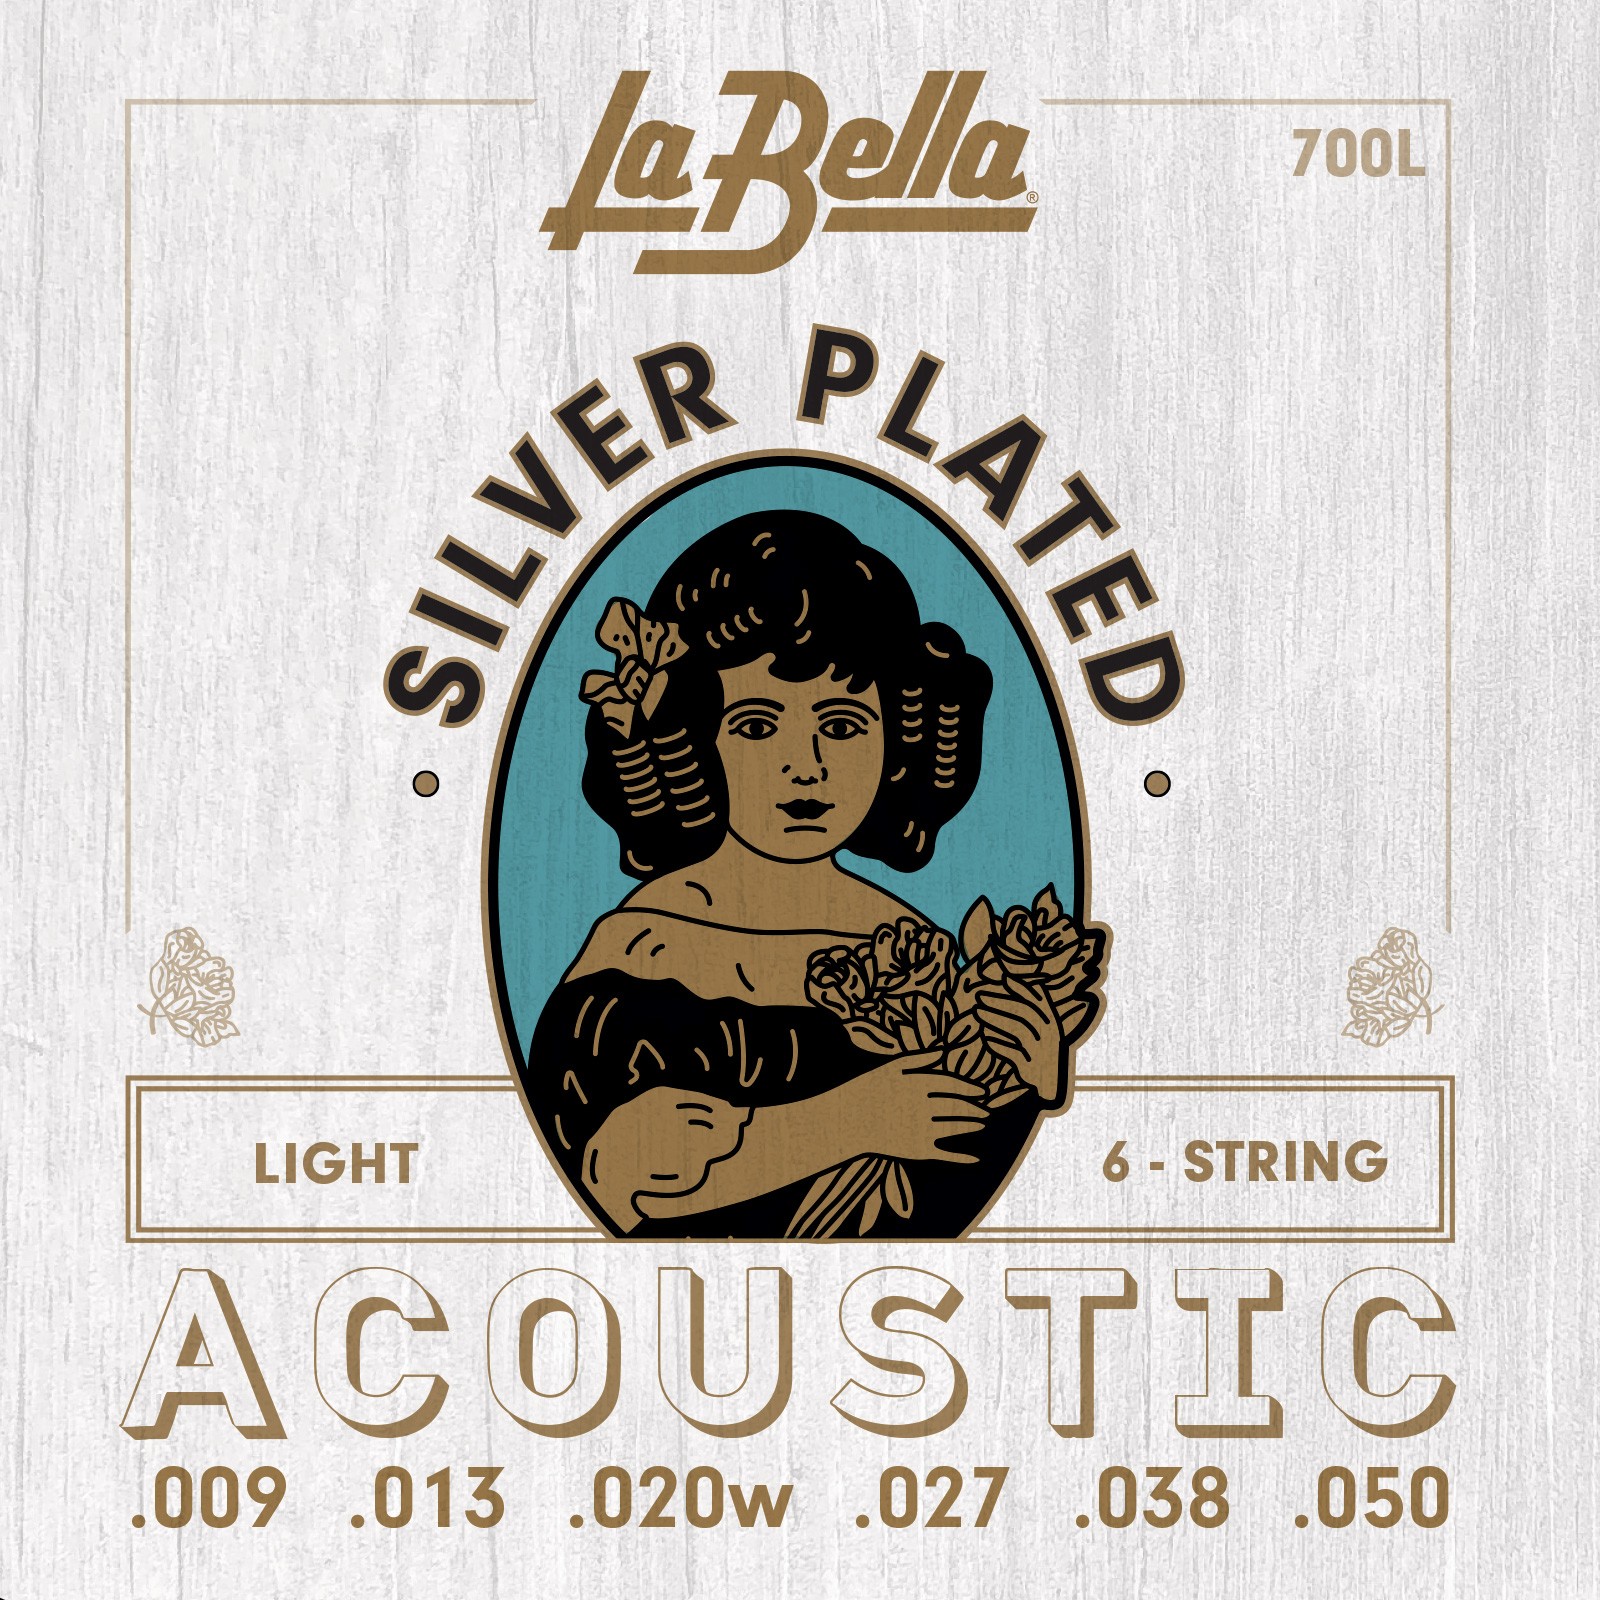 LA BELLA La Bella Silver Plated | Muta di corde per chitarra acustica 700L Scalatura: 009-013-020w-027-038-050